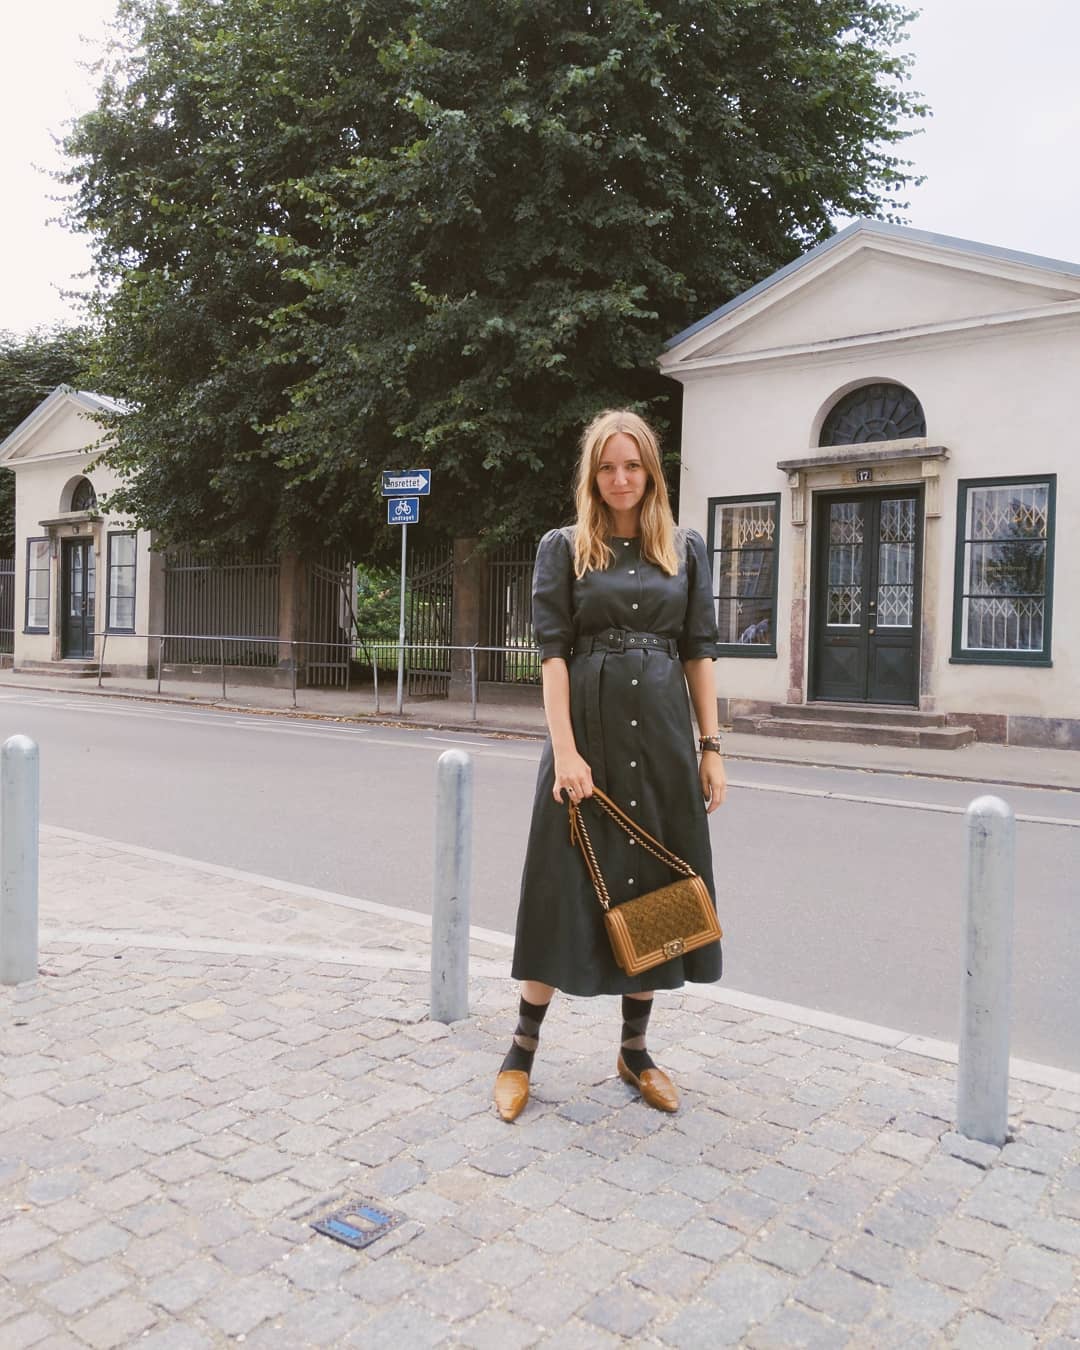 Copenhagen Fashion Week Day 1  feat. @gestuz @thisisaeyde @chanelofficial via @vestiaireco / Anzeige,  da Marken markiert.
•
#vestiairefwchallenge #vestiarecollective #circularfashion